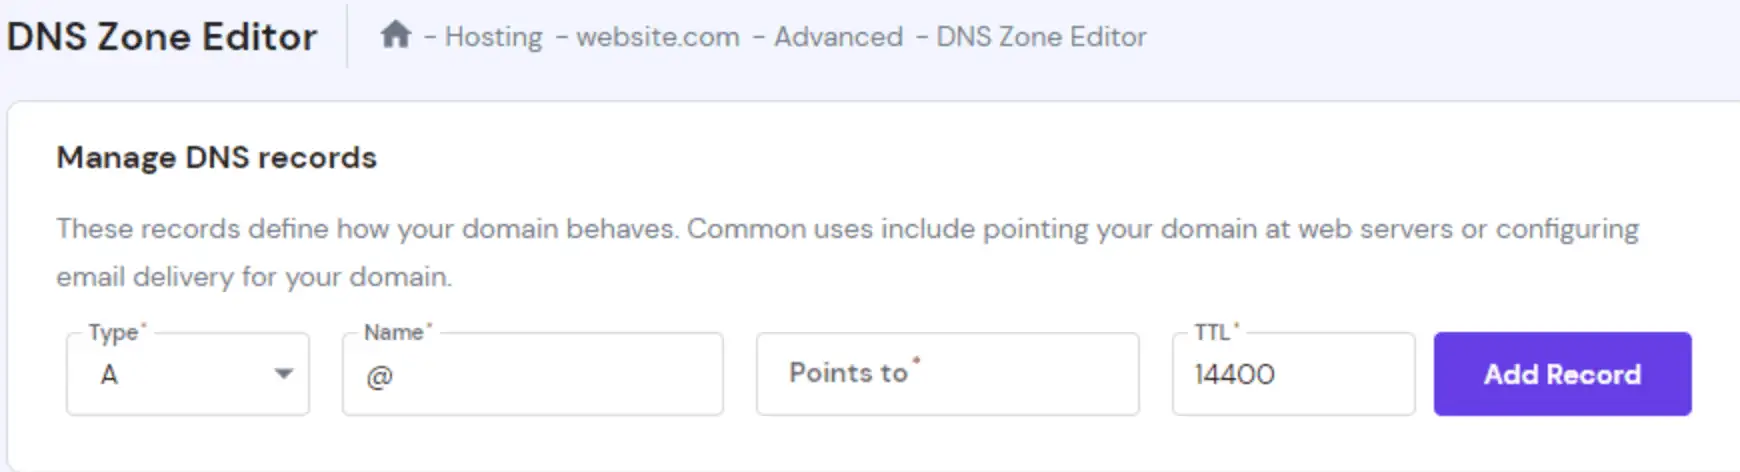 L'Editor di zone DNS su hPanel, che mostra la sezione Gestisci record DNS per aggiungere un nuovo record.